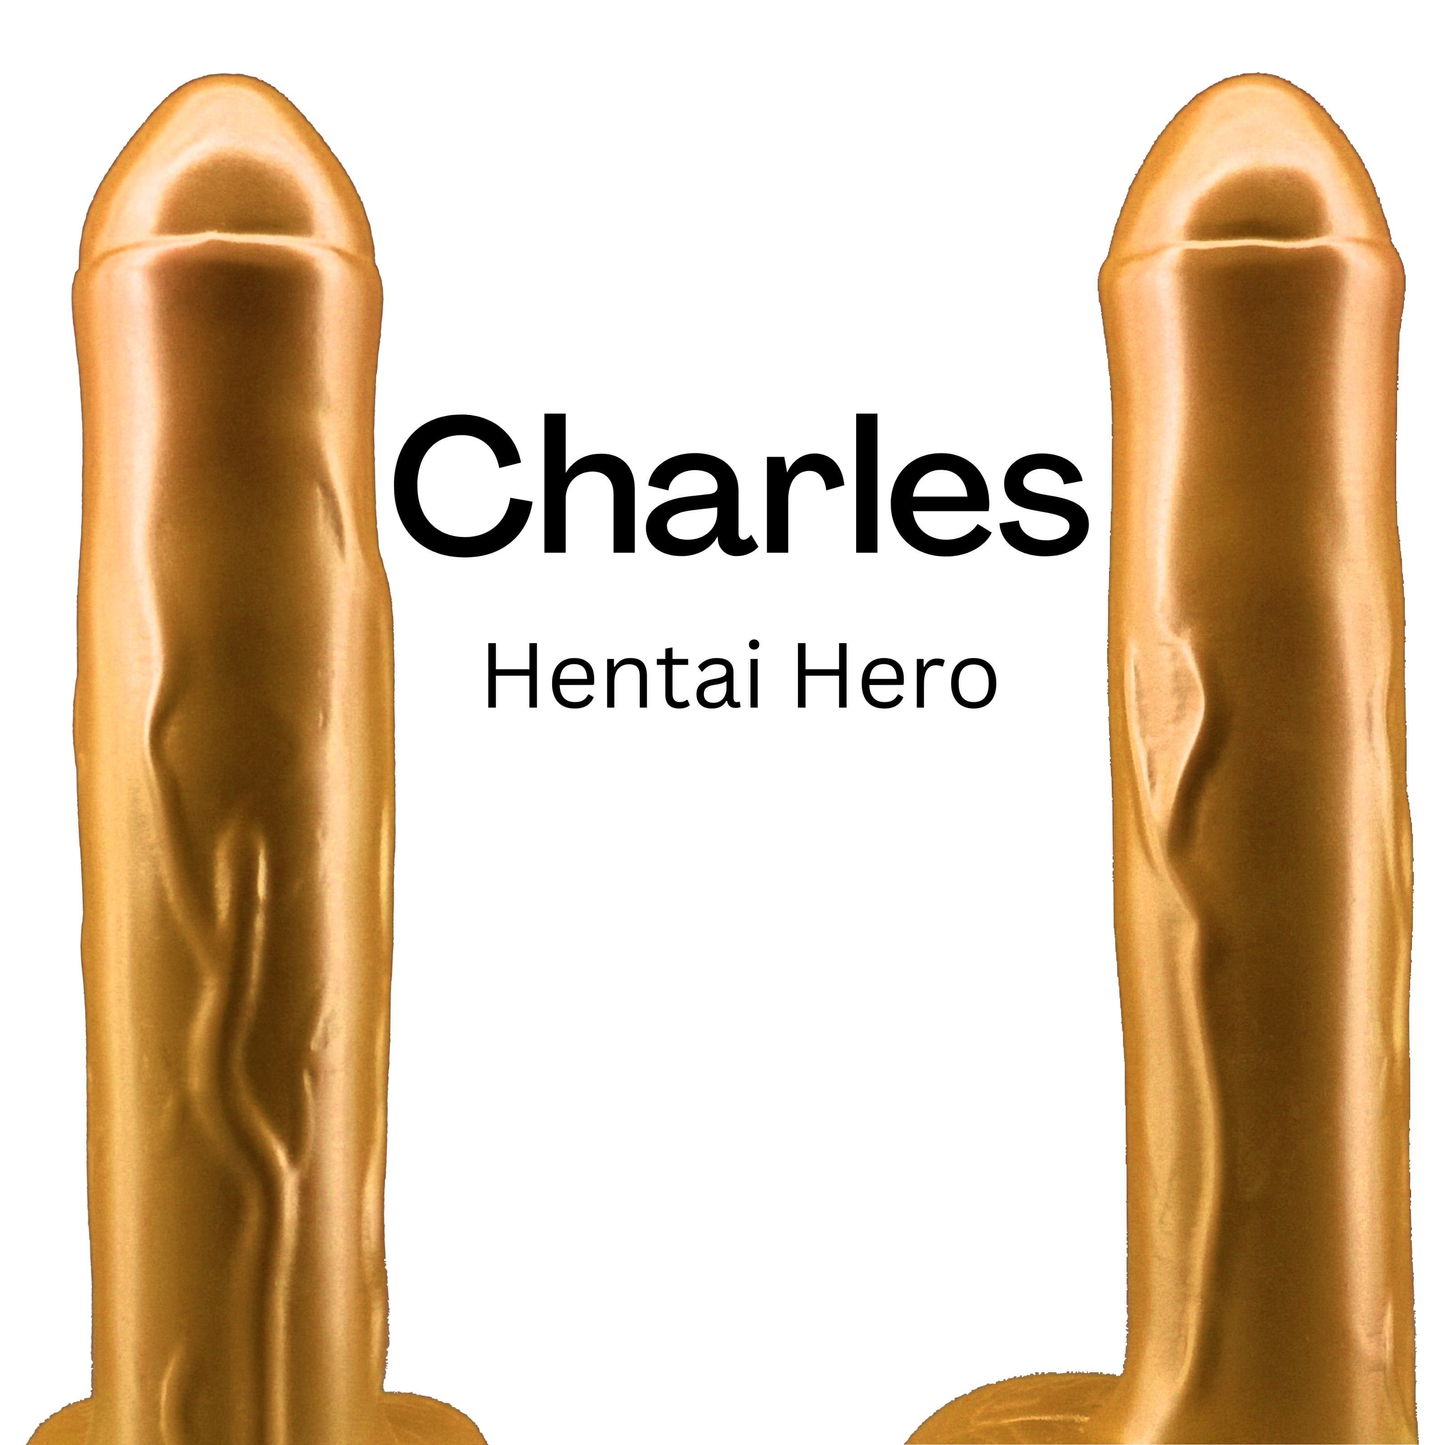 Charles - Hentai Hero